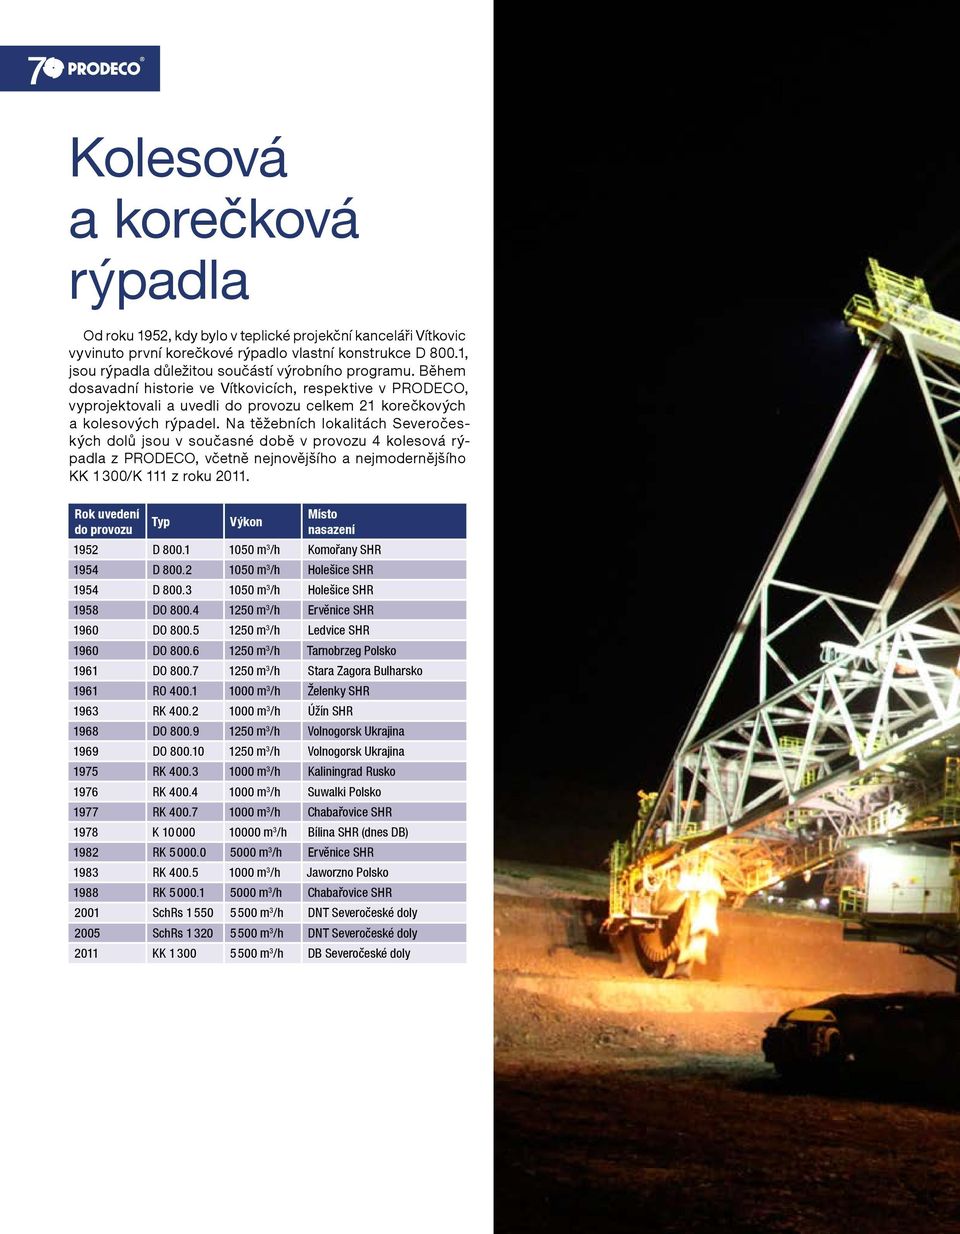 Na těžebních lokalitách Severočeských dolů jsou v současné době v provozu 4 kolesová rýpadla z PRODECO, včetně nejnovějšího a nejmodernějšího KK 1 300/K 111 z roku 2011.